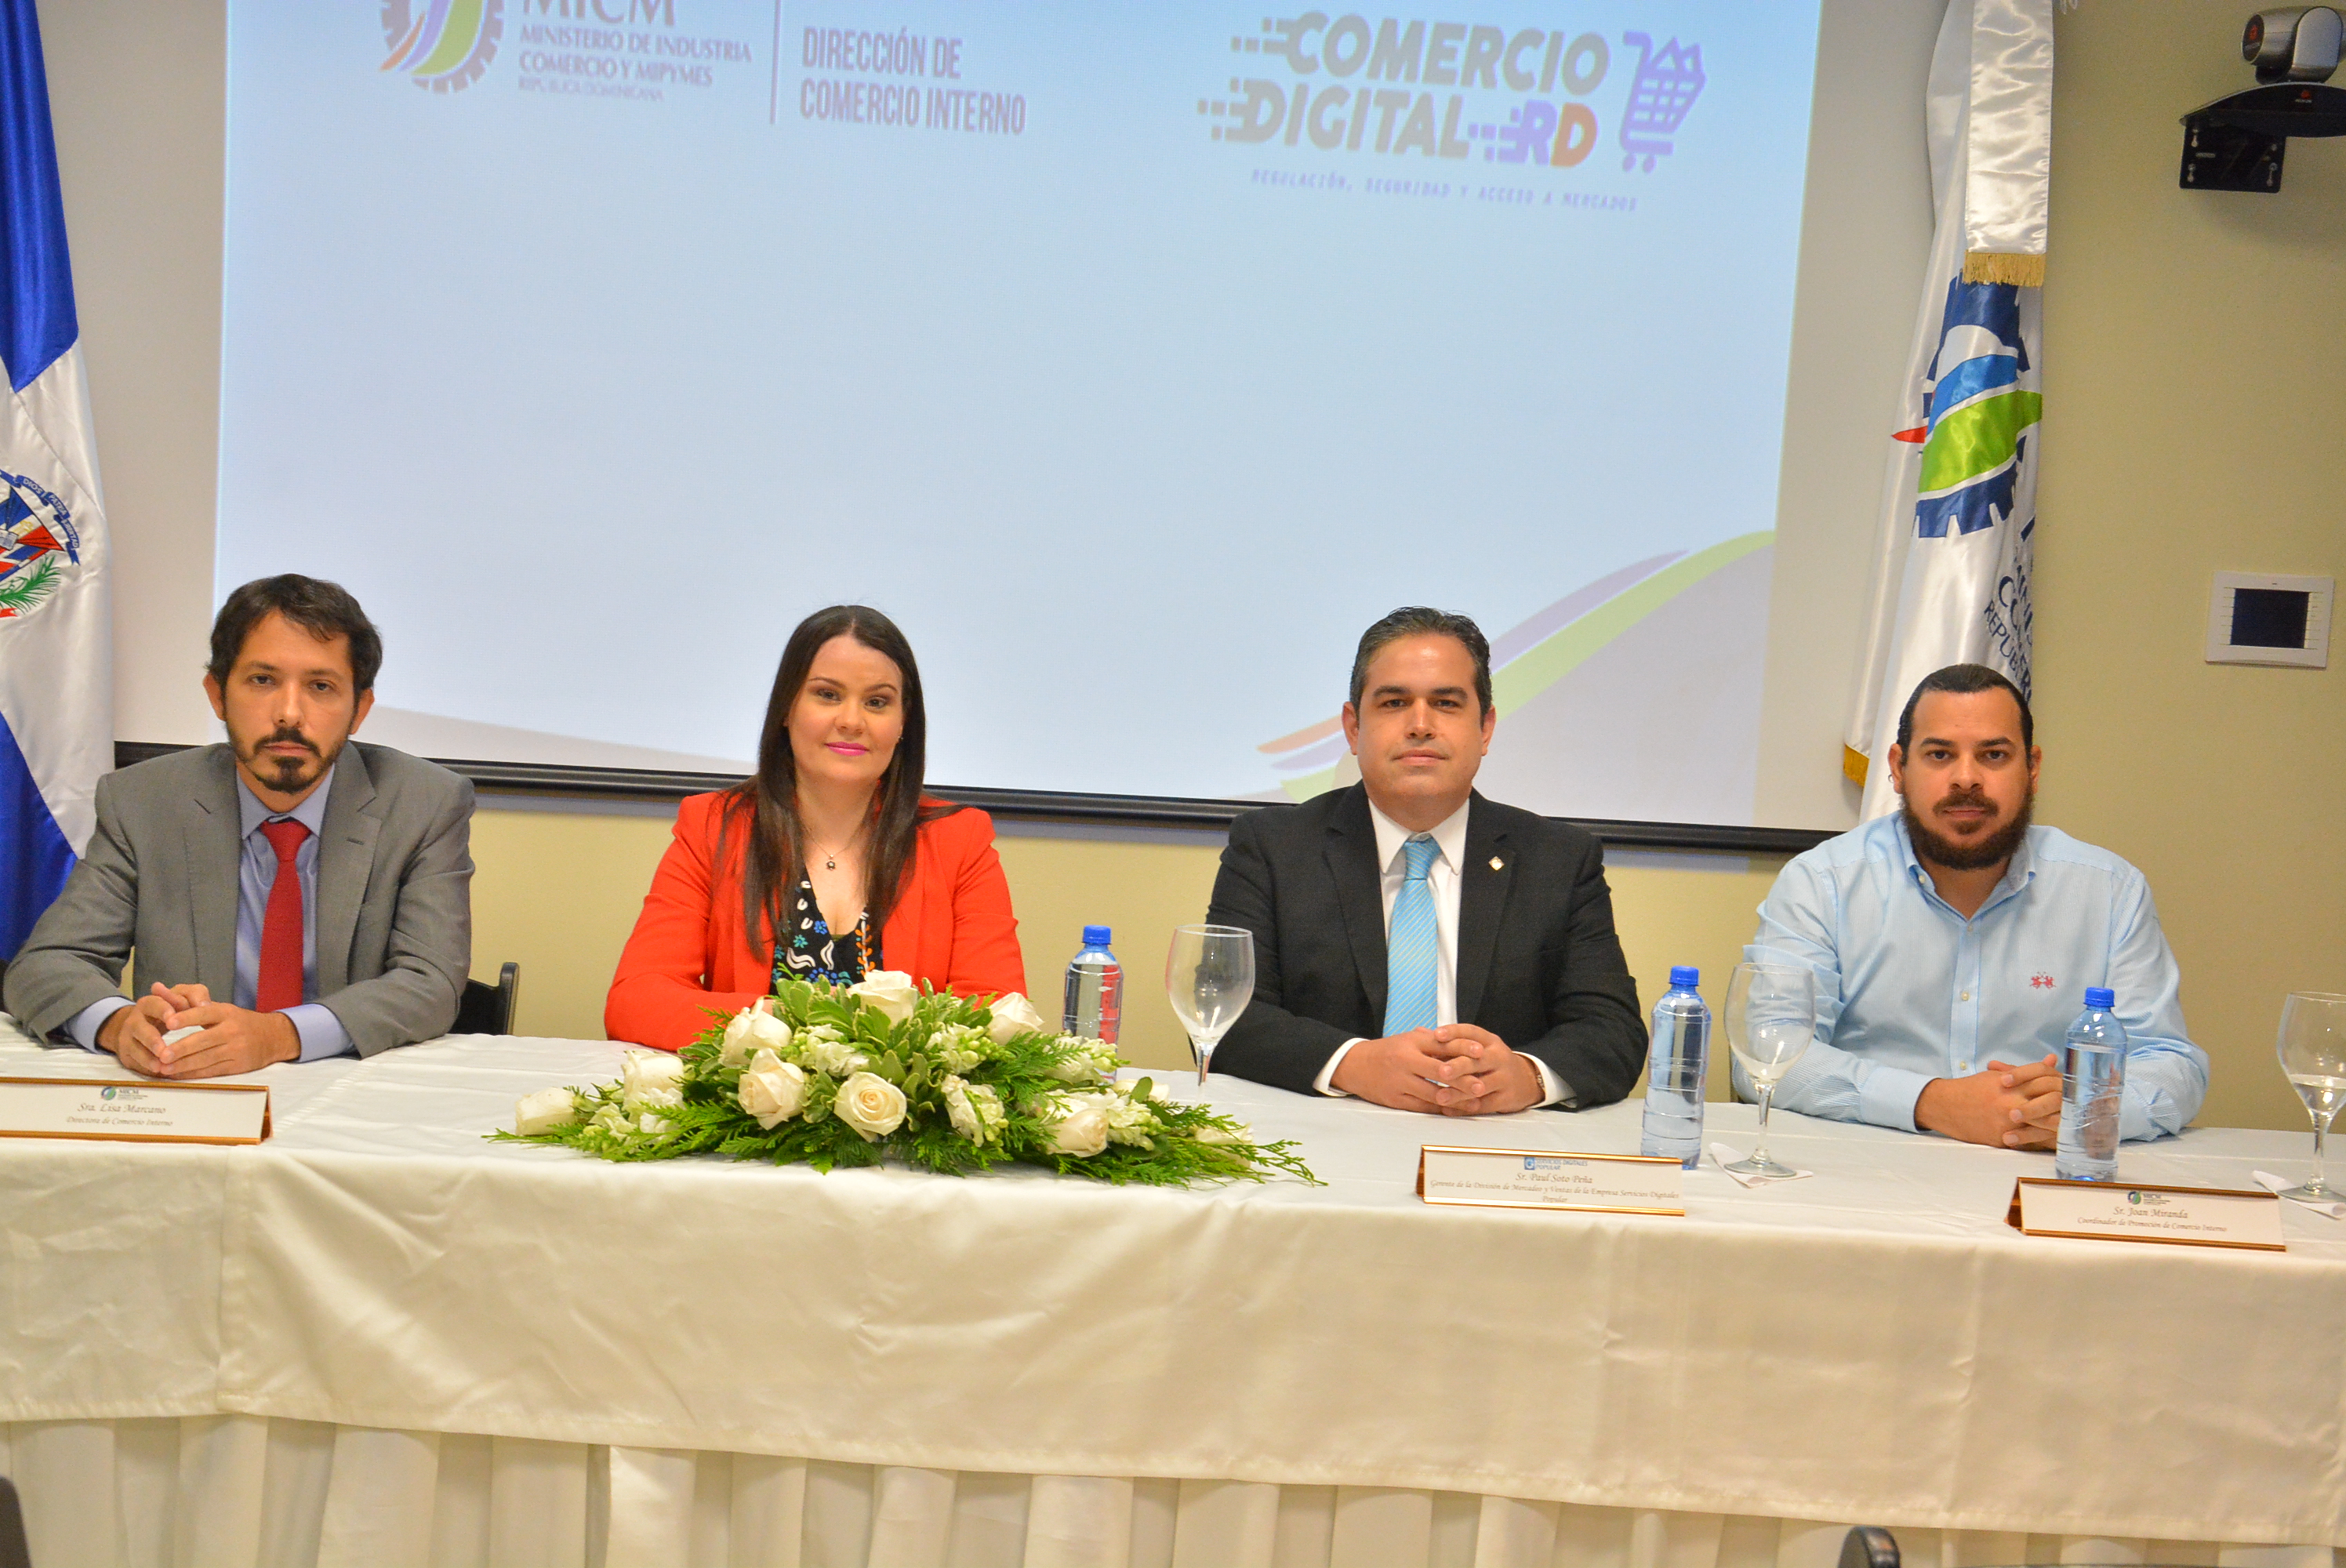  MICM promueve la incursión de empresarios dominicanos en el comercio digital